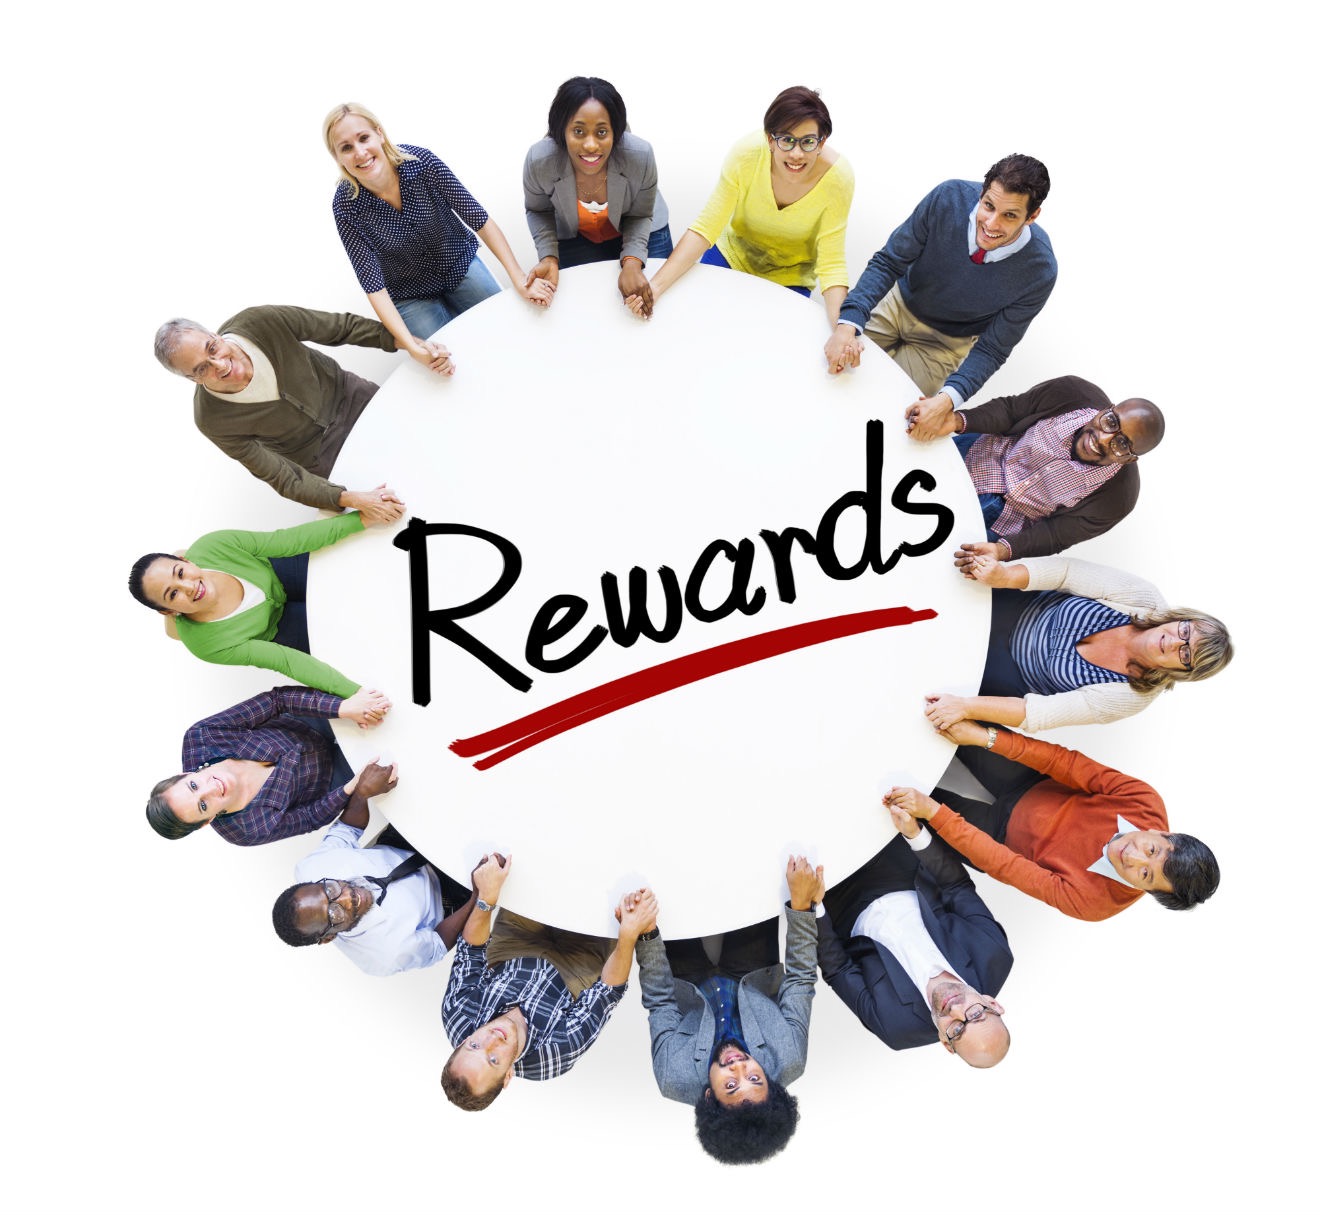 Employee Rewards